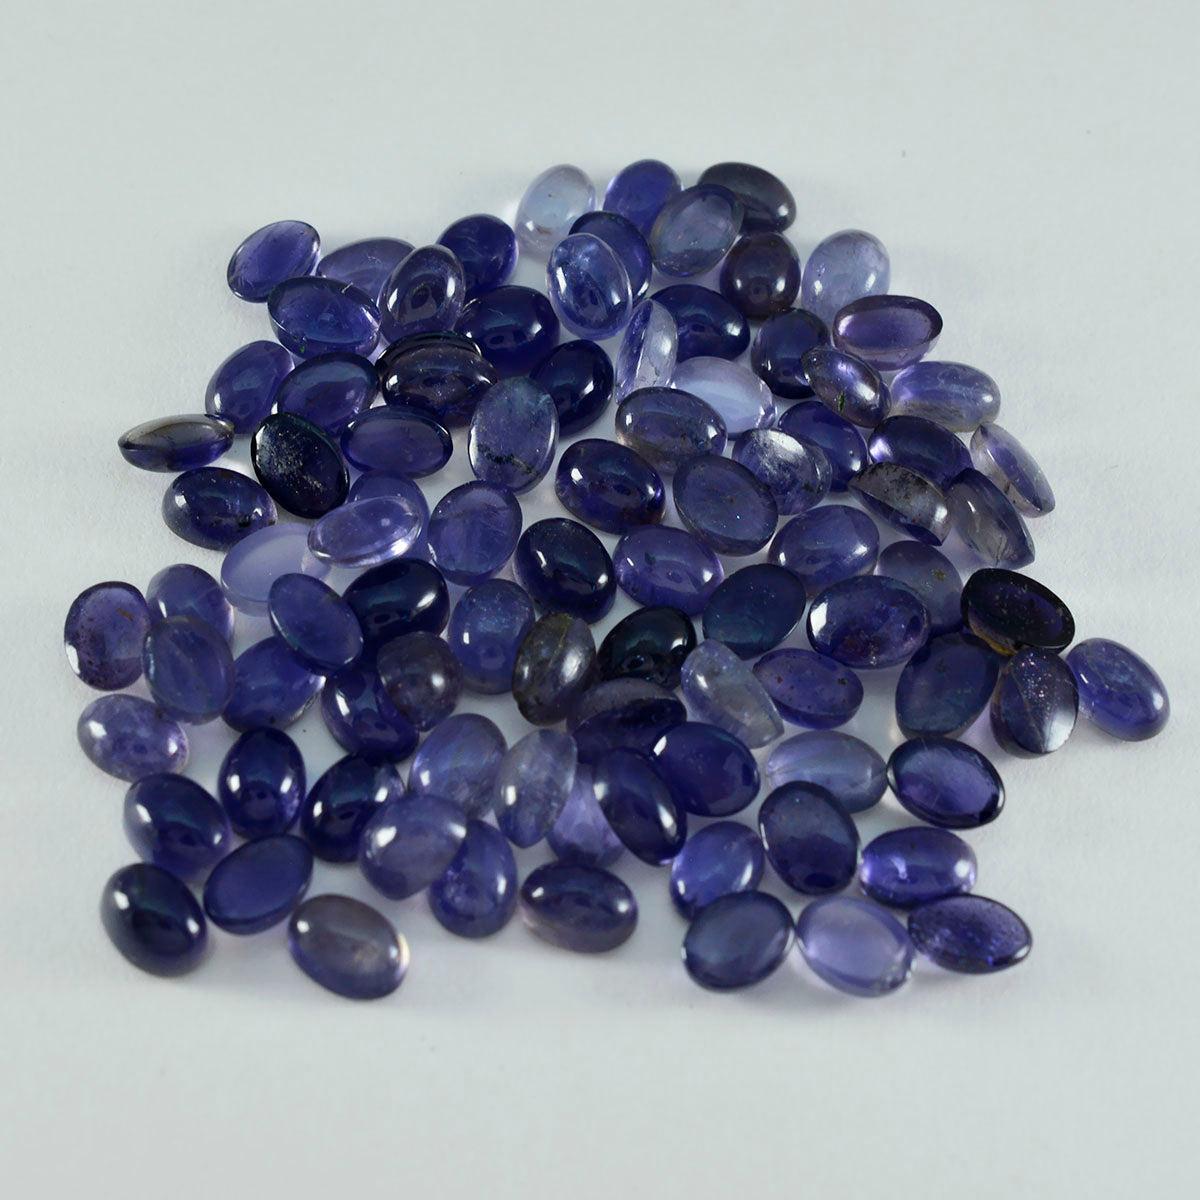 Riyogems 1 cabochon iolite bleu 3x5 mm forme ovale belle qualité pierre précieuse en vrac